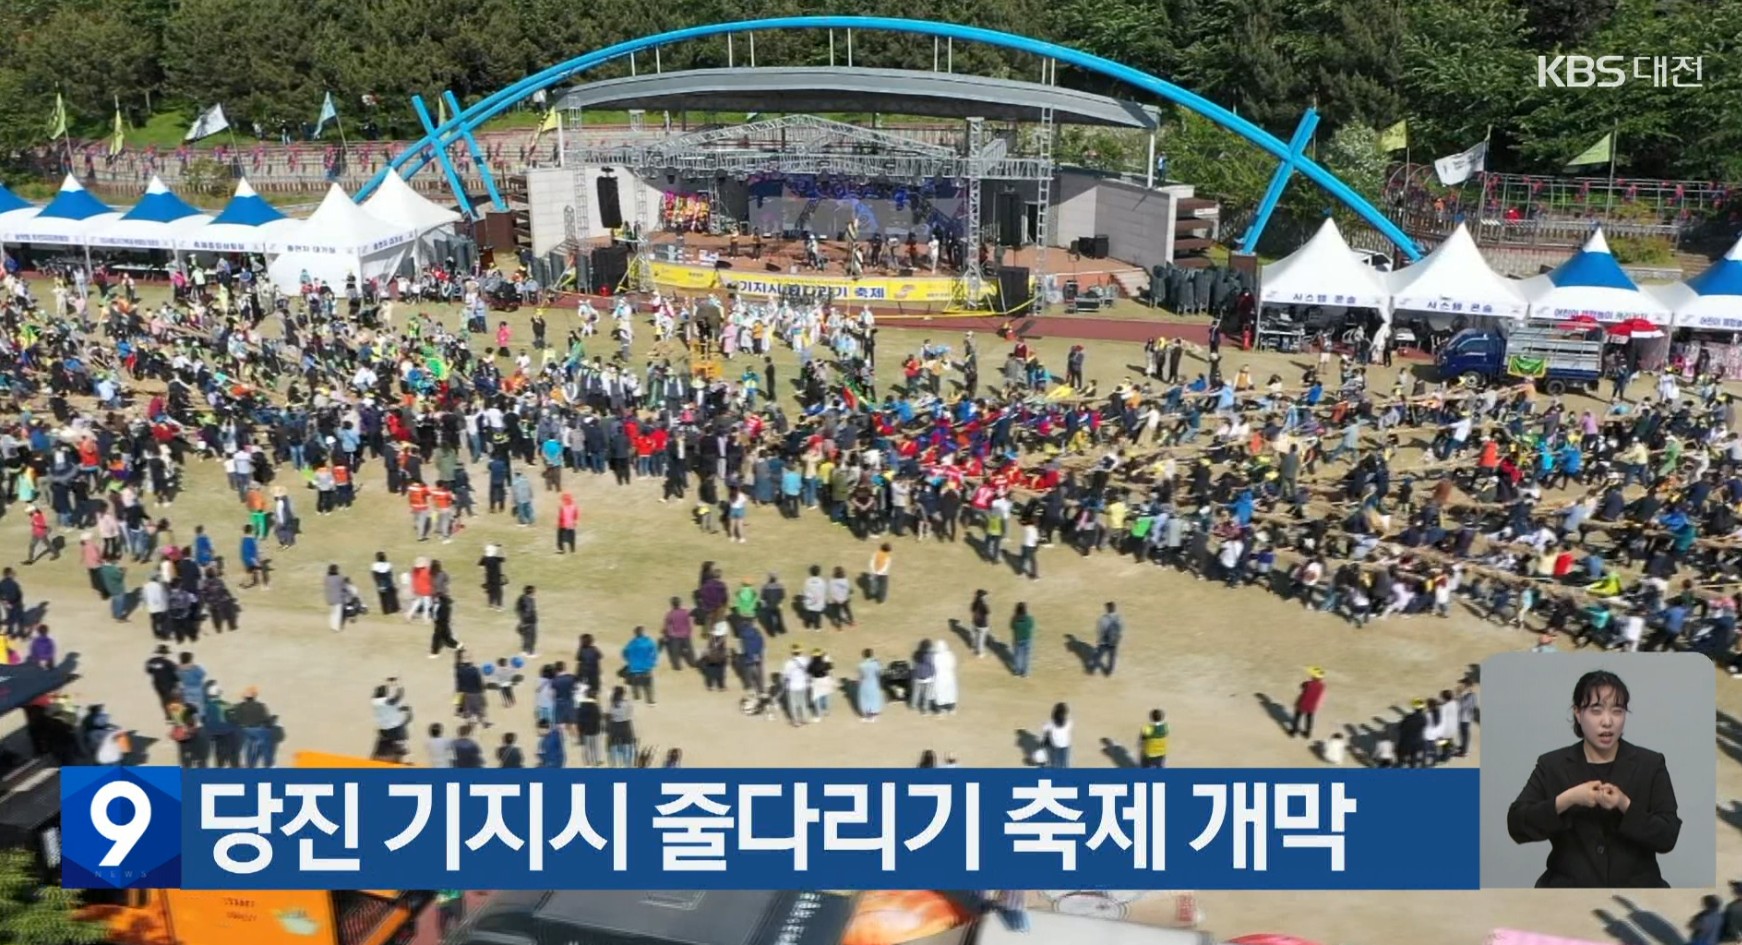 당진 기지시 줄다리기 축제 개막_KBS1대전_충남방송_4.19(수) 이미지